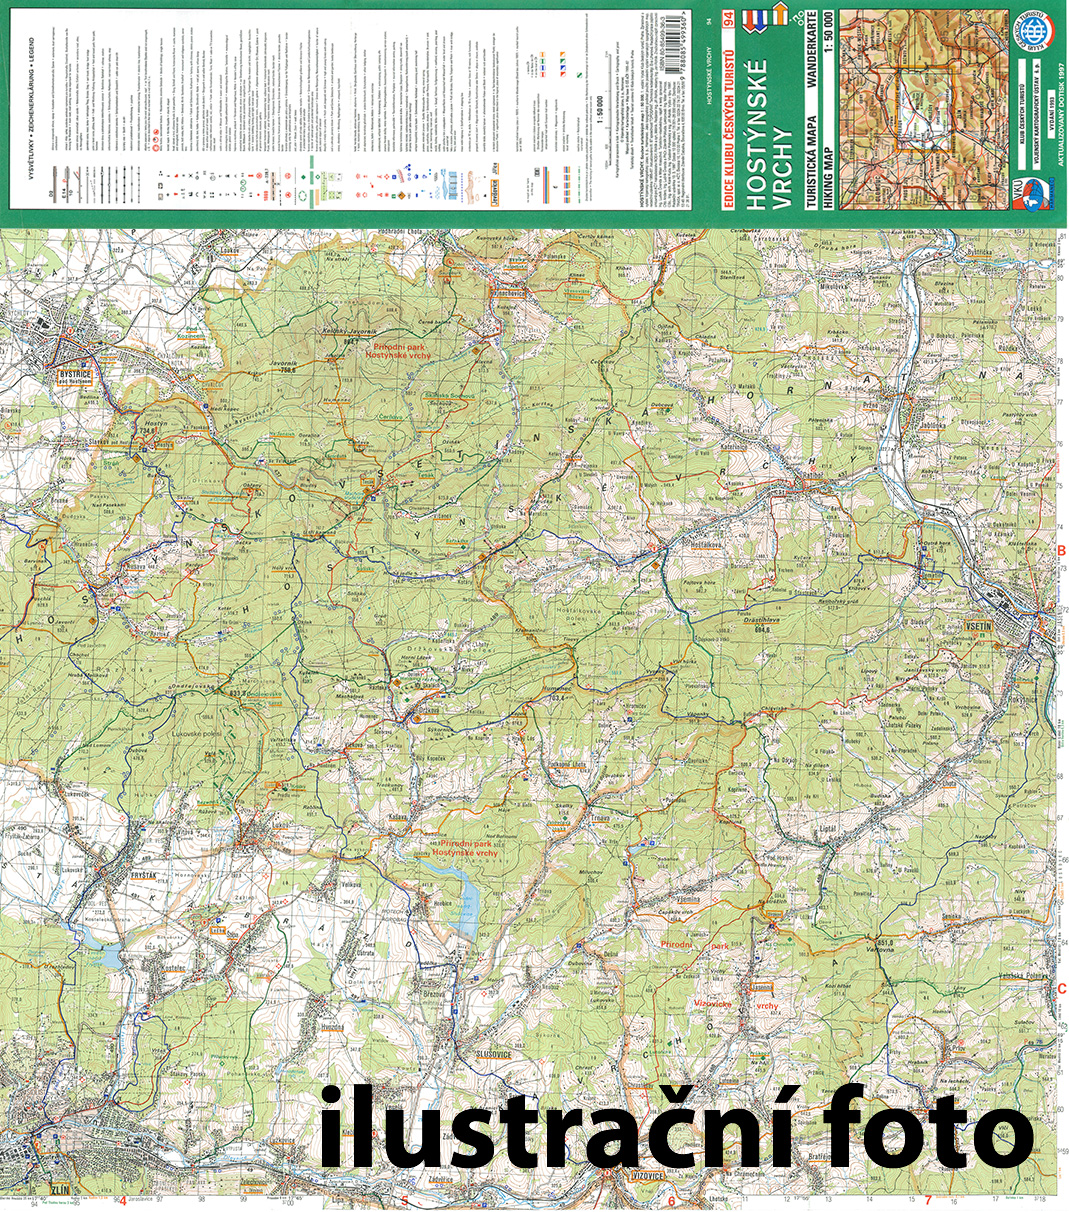 Nástěnná mapa Podřipsko - turistická (09)